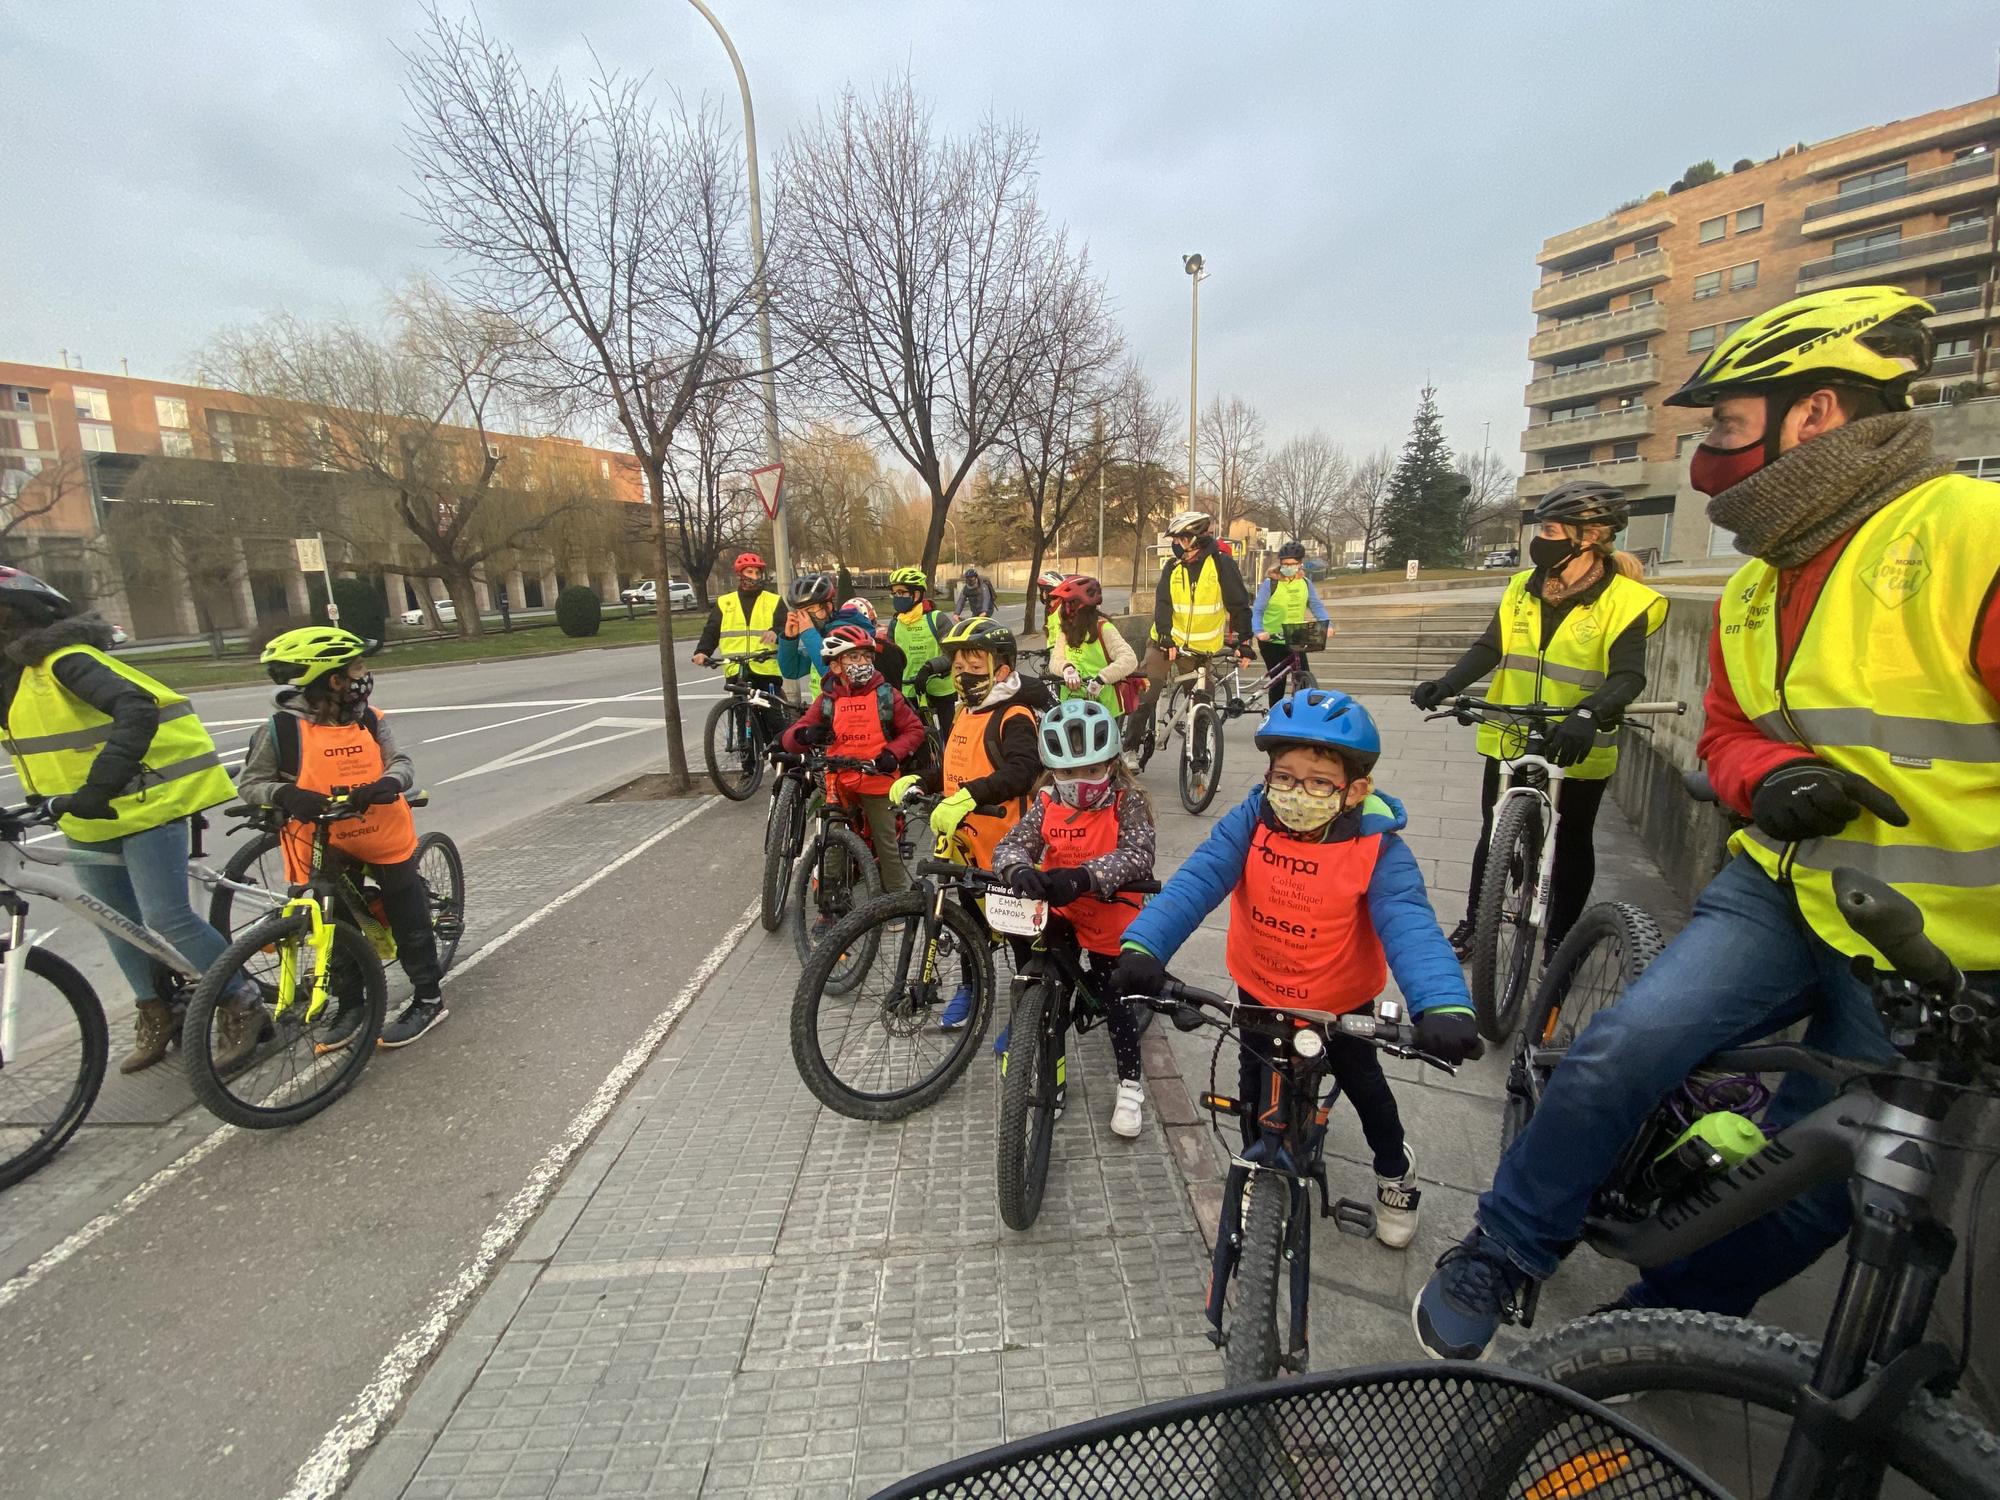 Niños en bici: ¿delante o detrás?